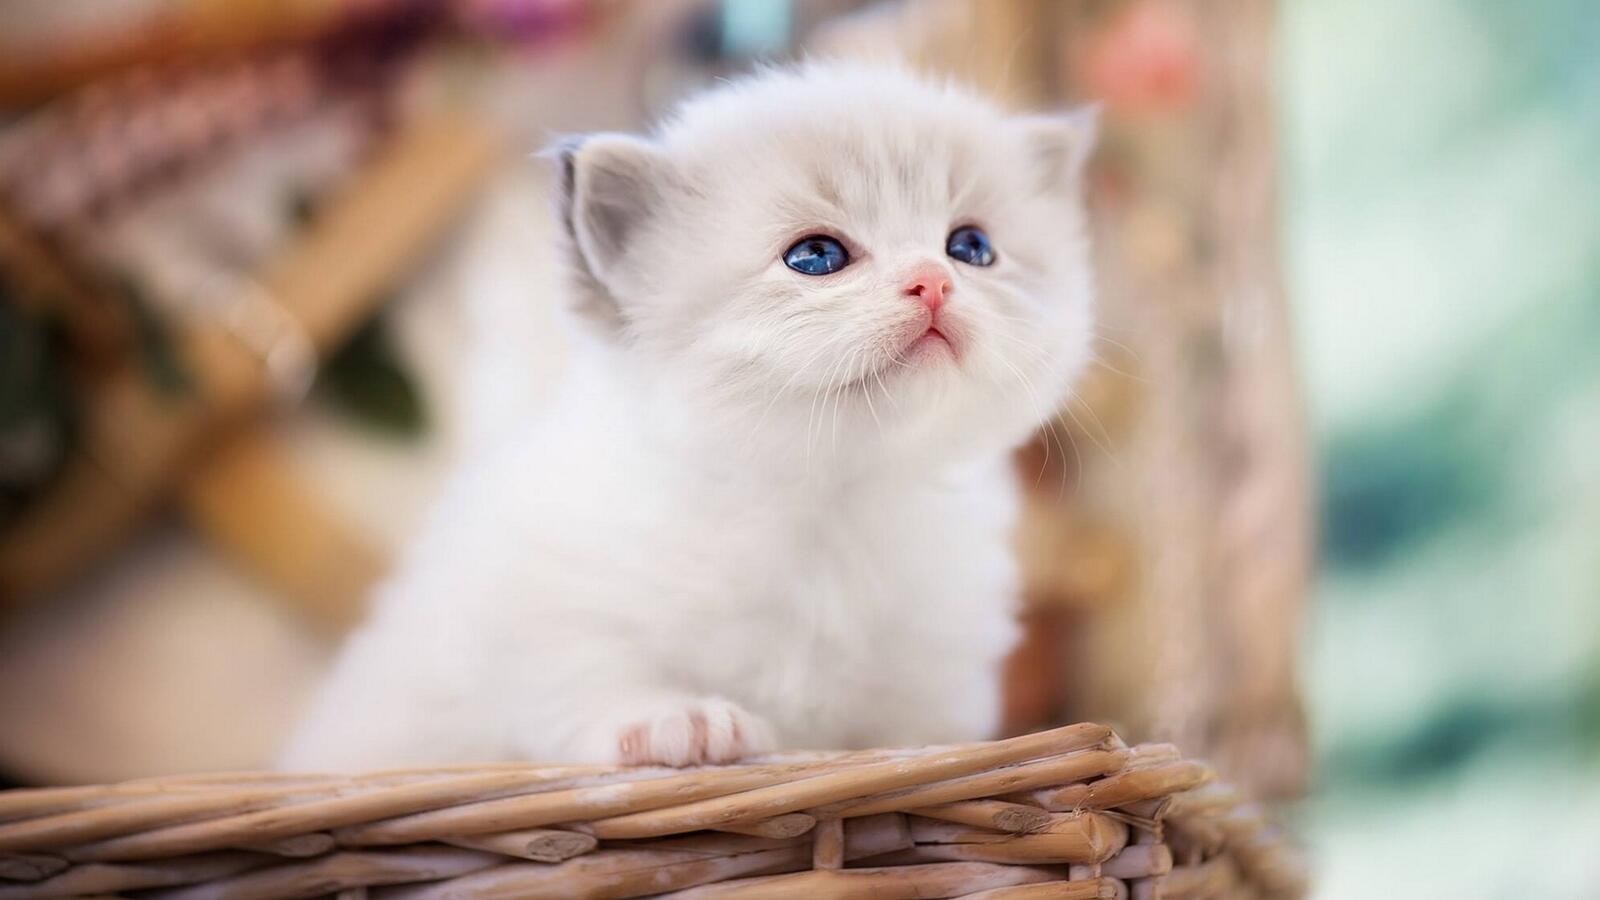 Бесплатное фото Милый белый котенок с голубыми глазами